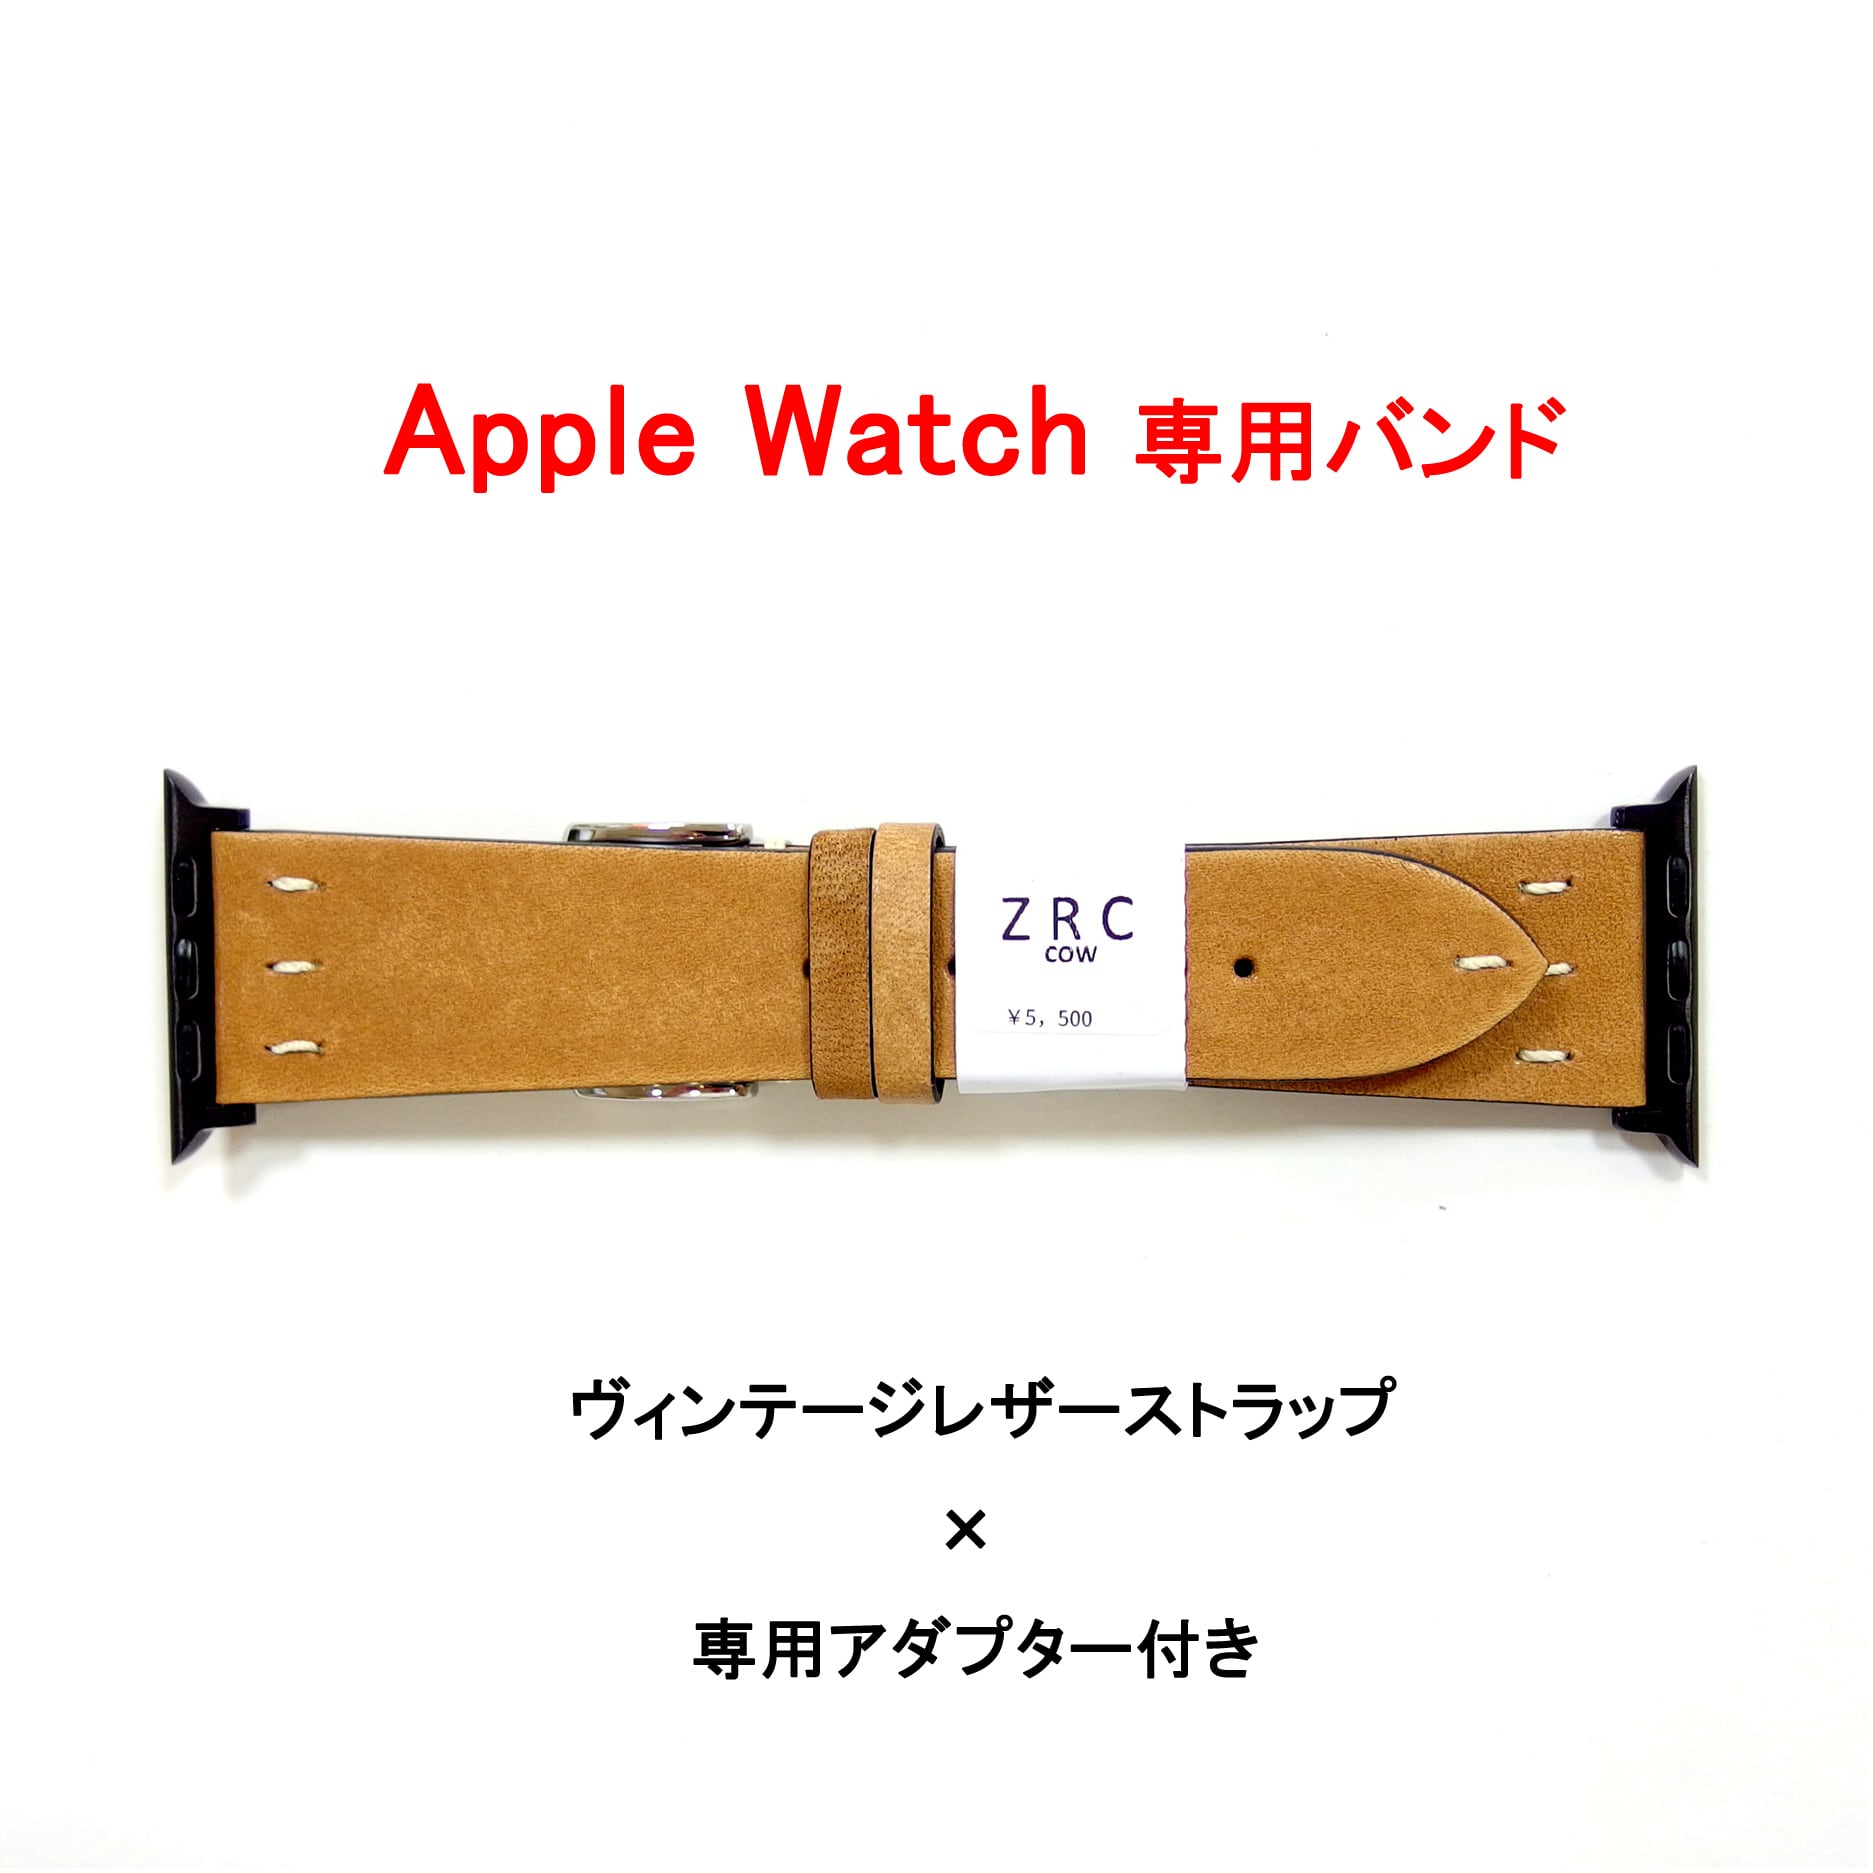 【Apple Watch専用ストラップ】レザーストラップ+専用アダプター